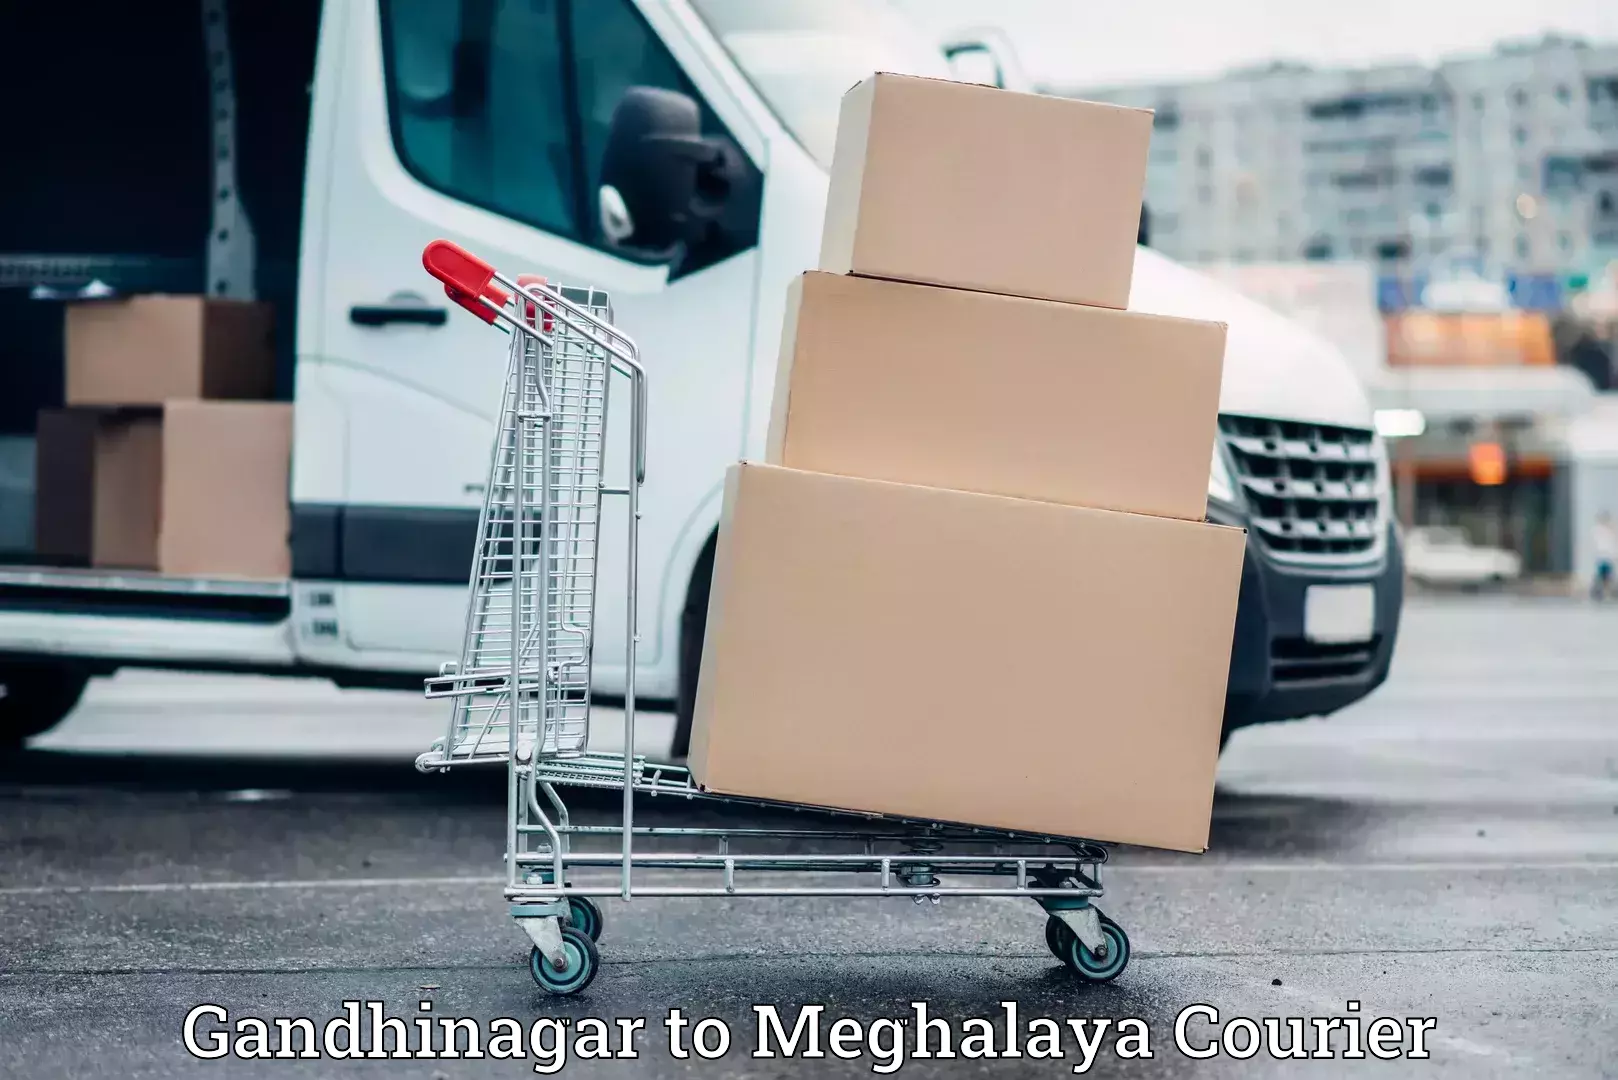 Full-service movers Gandhinagar to Meghalaya